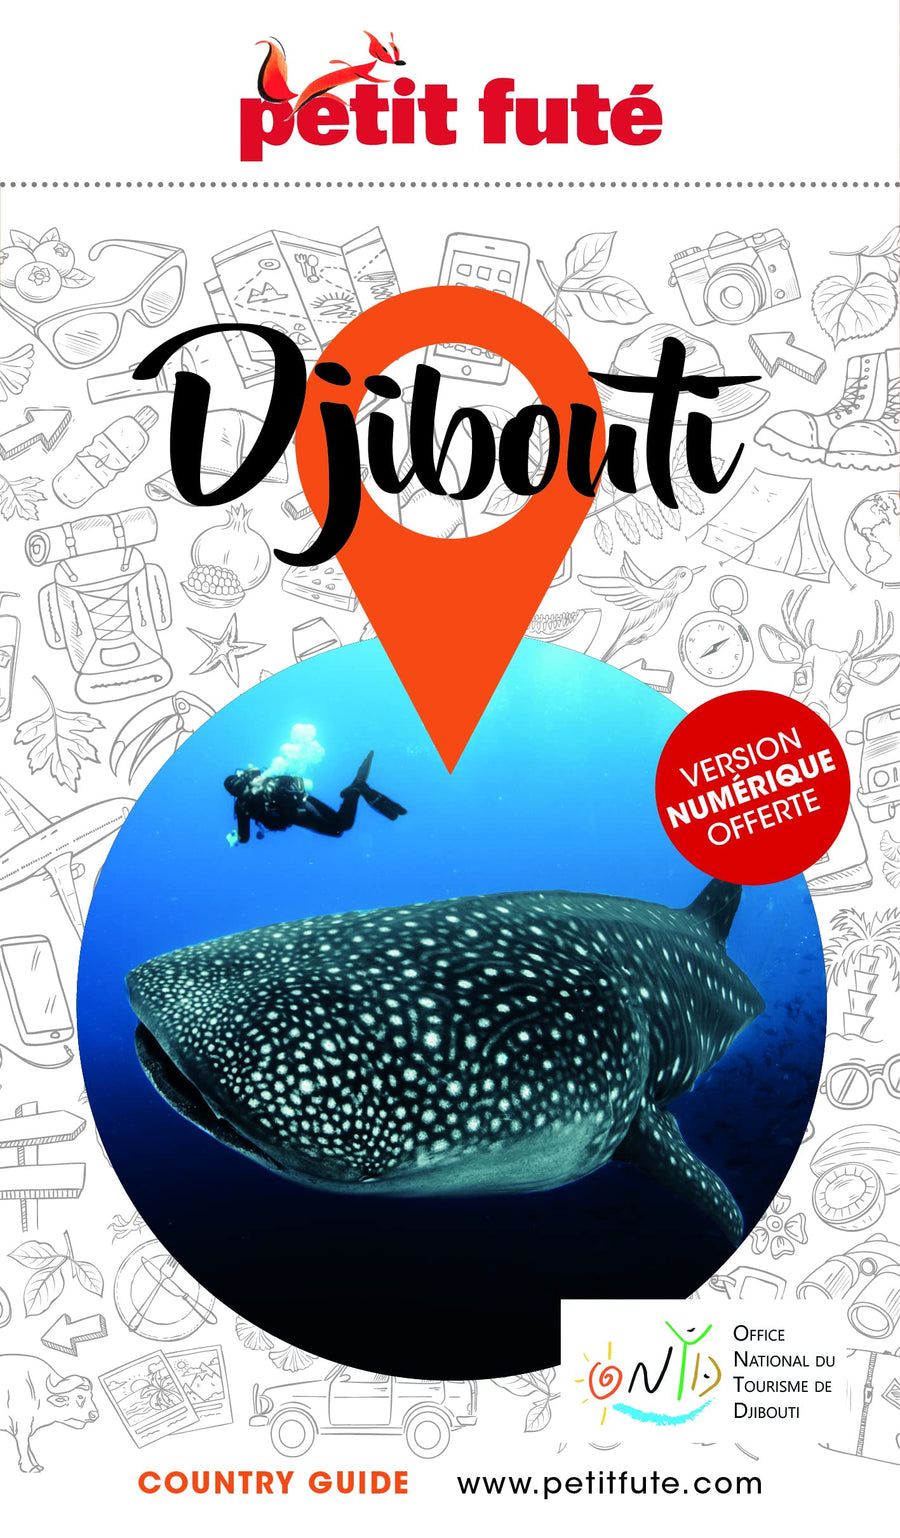 Guide de voyage - Djibouti 2021/22 | Petit Futé guide de voyage Petit Futé 